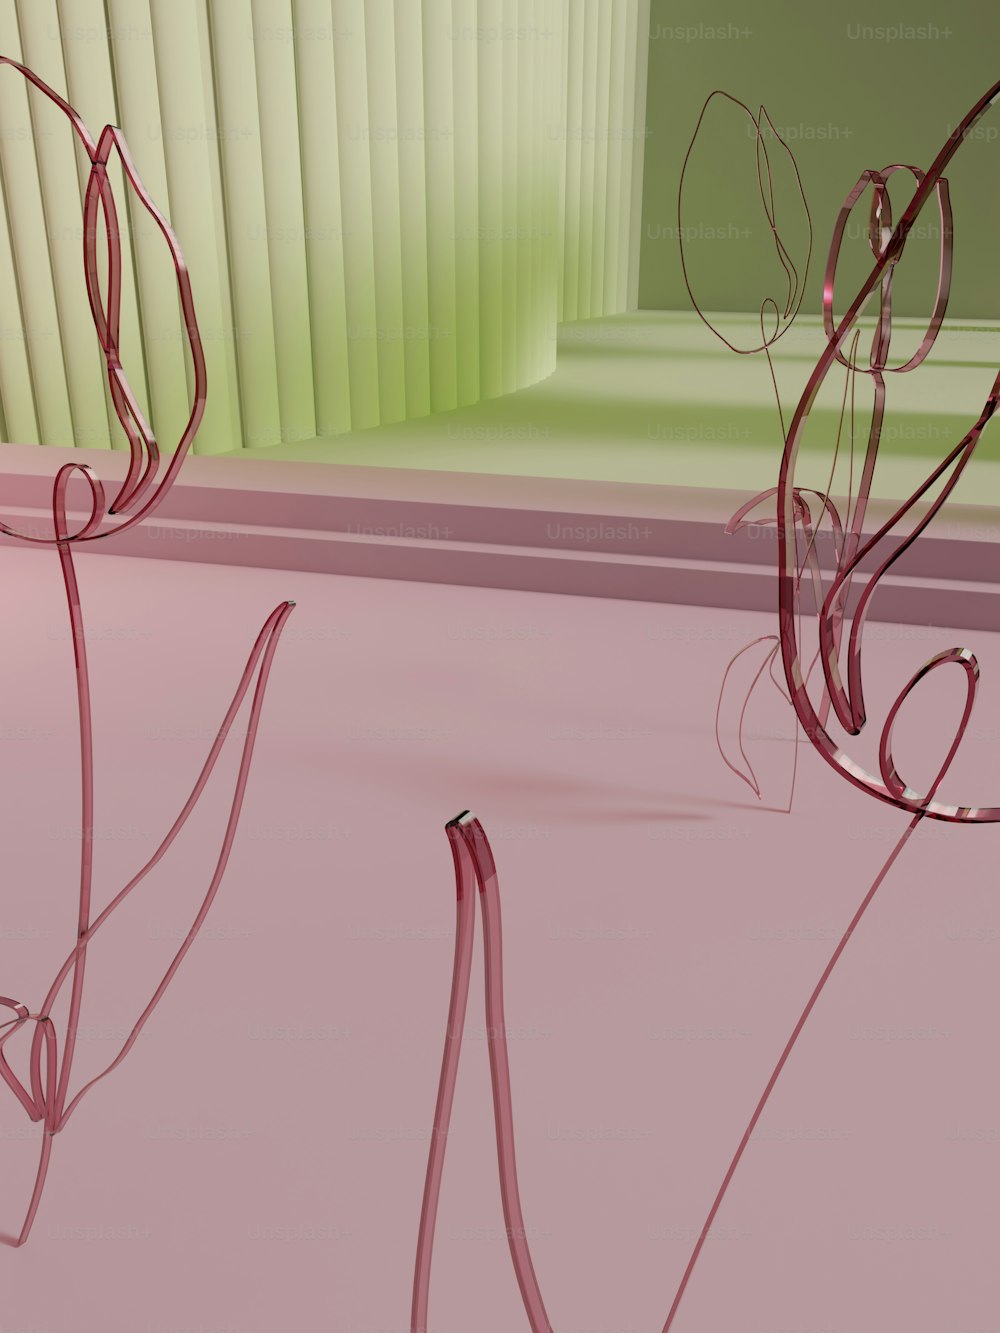 uma imagem gerada por computador de um objeto rosa